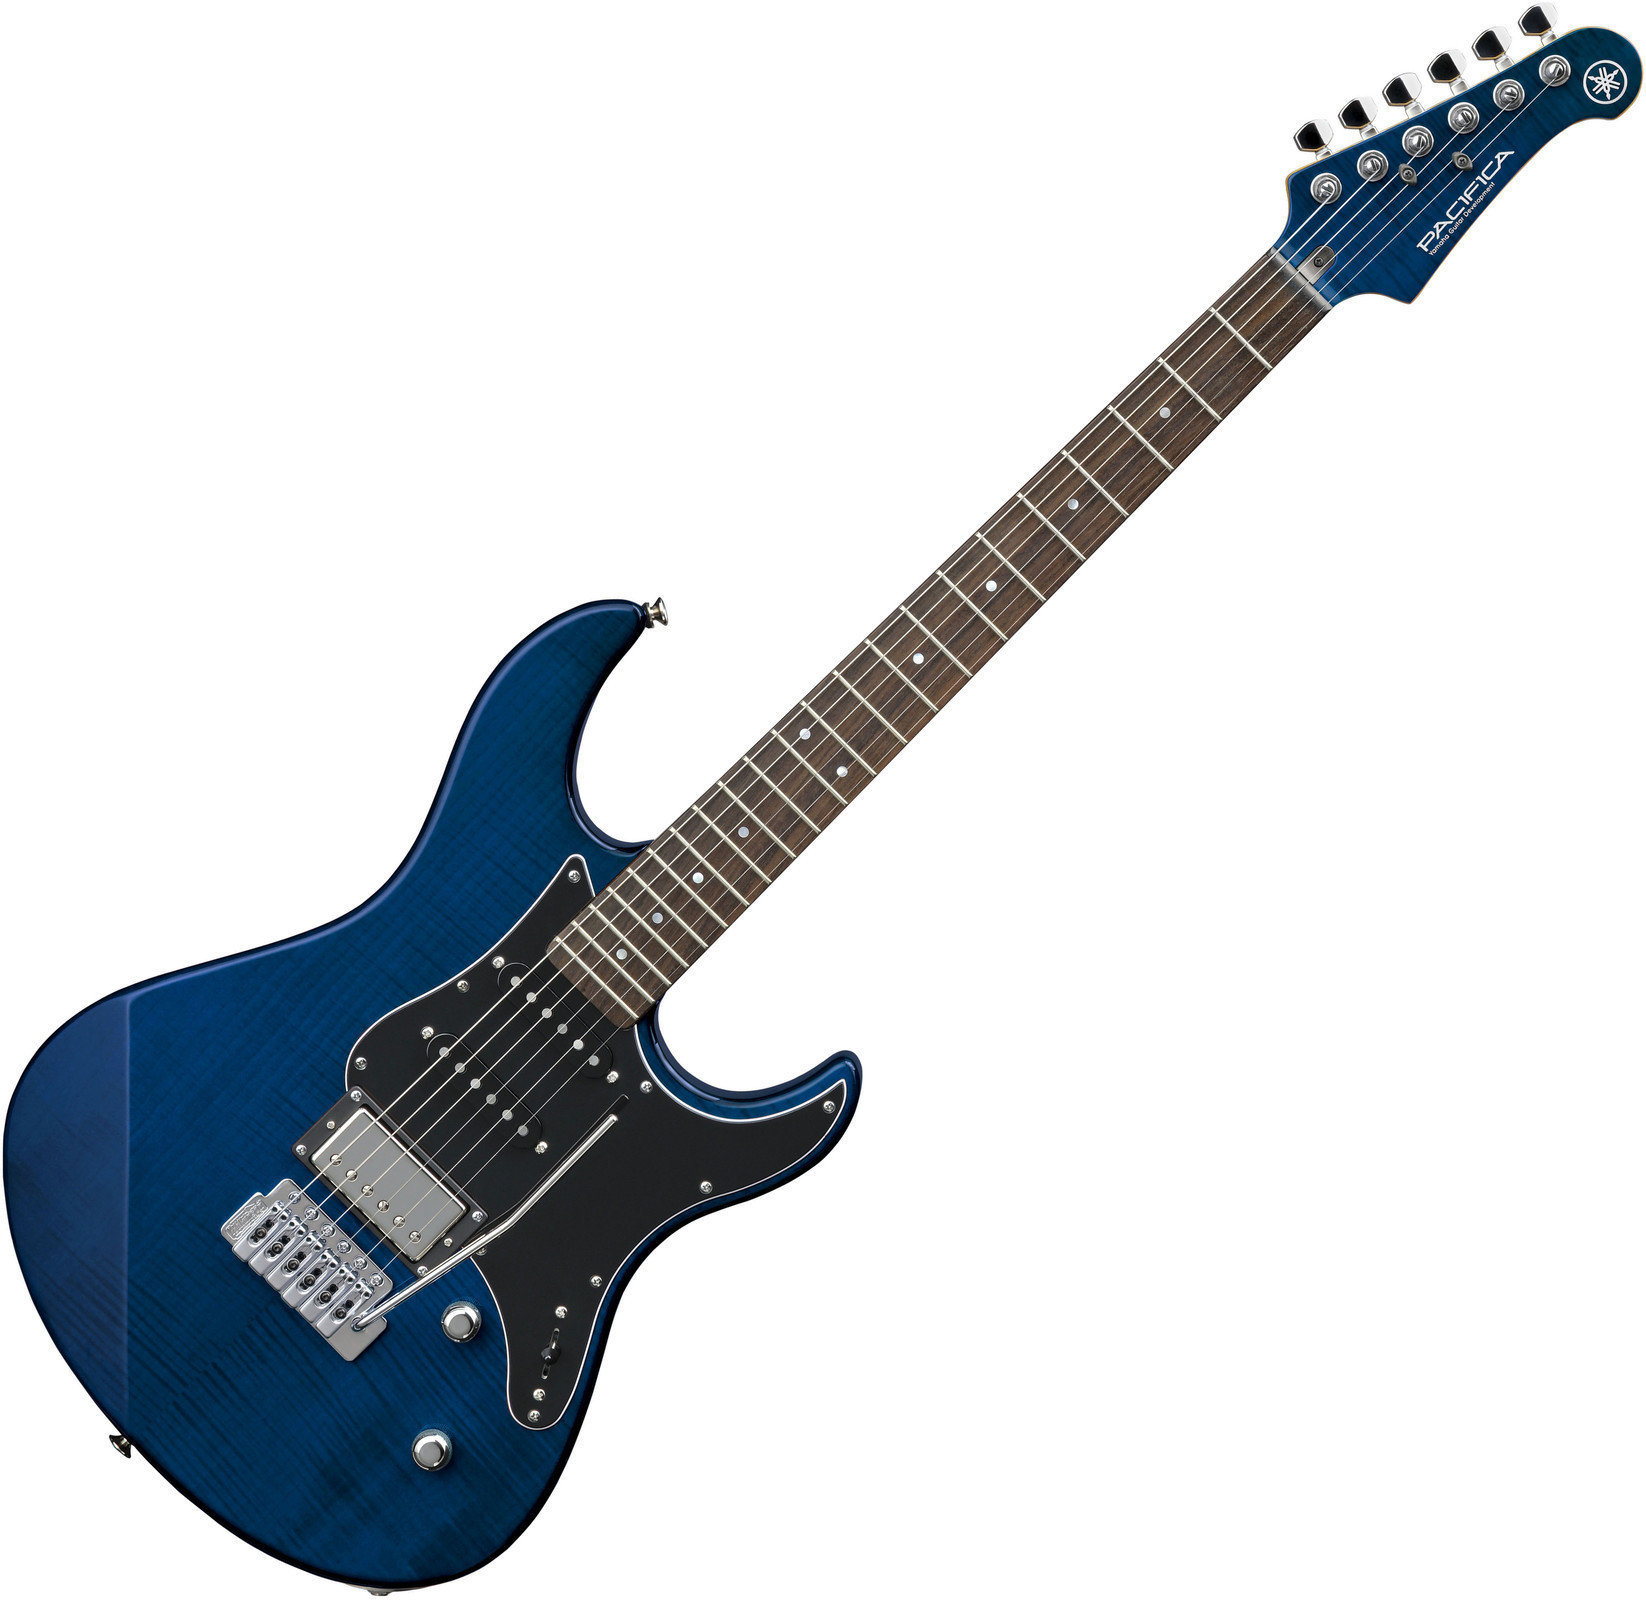 Ηλεκτρική Κιθάρα Yamaha Pacifica 612 V Flamed Maple Translucent BL